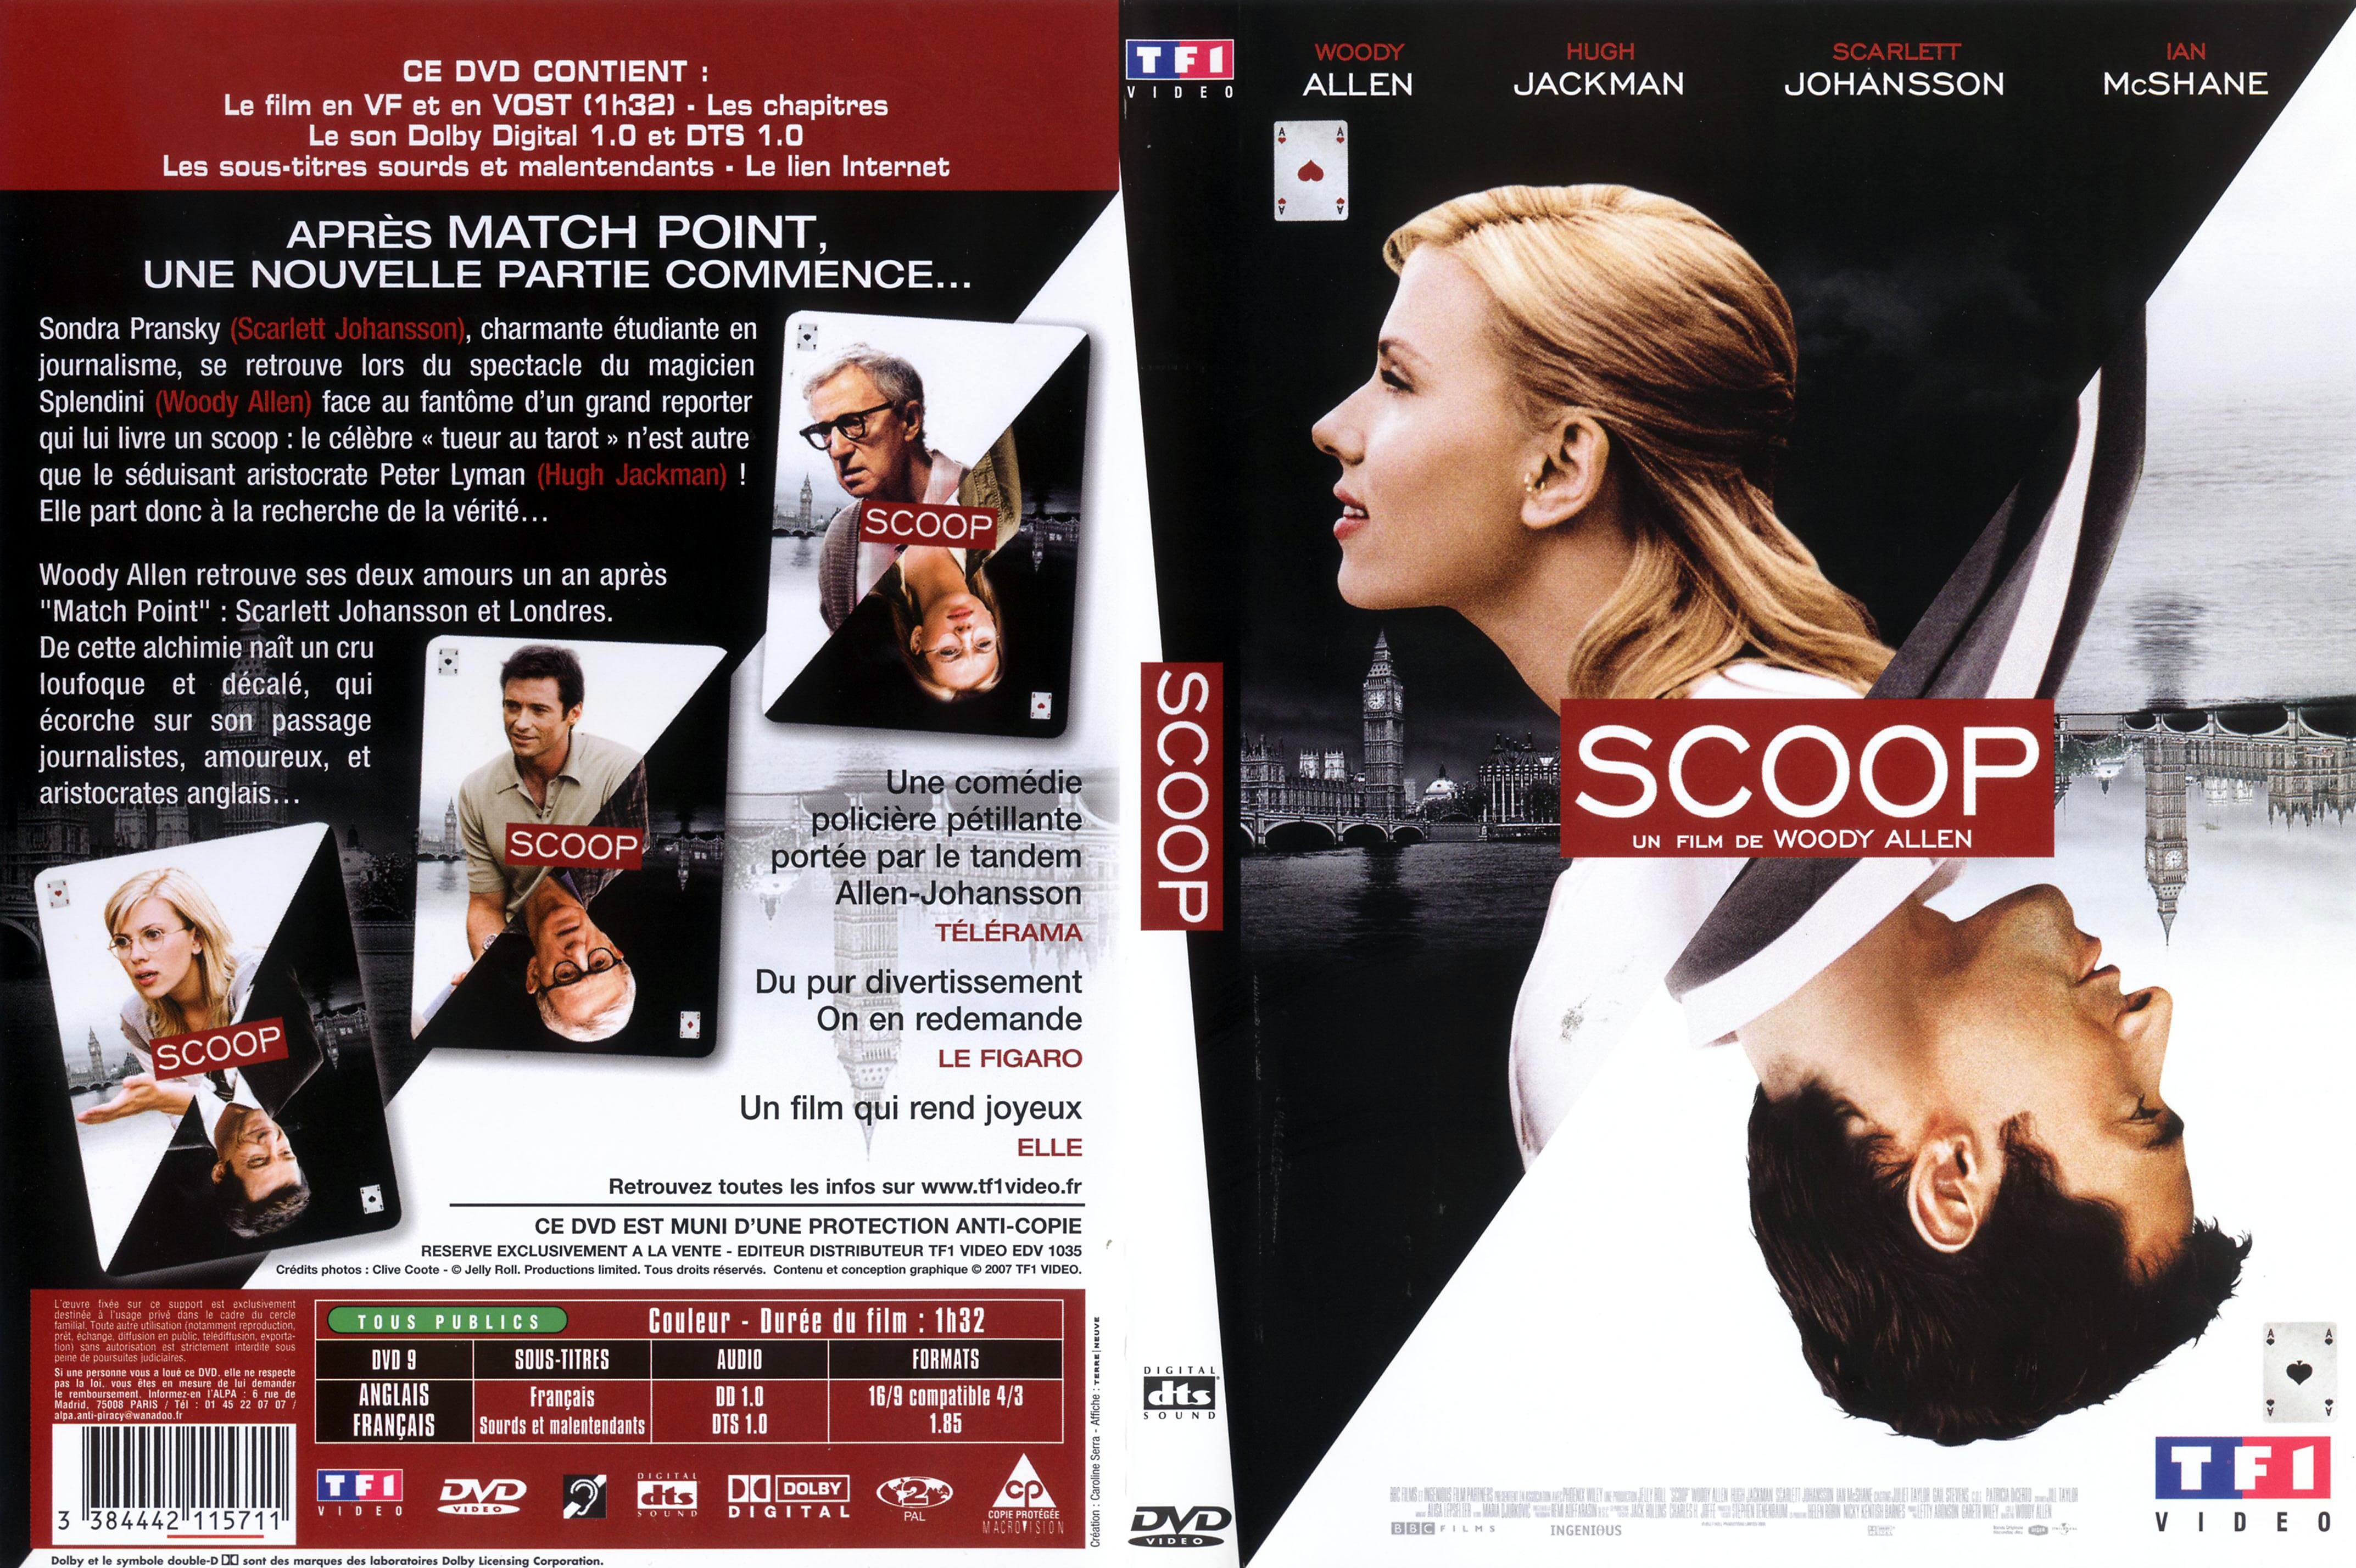 Jaquette DVD Scoop v4